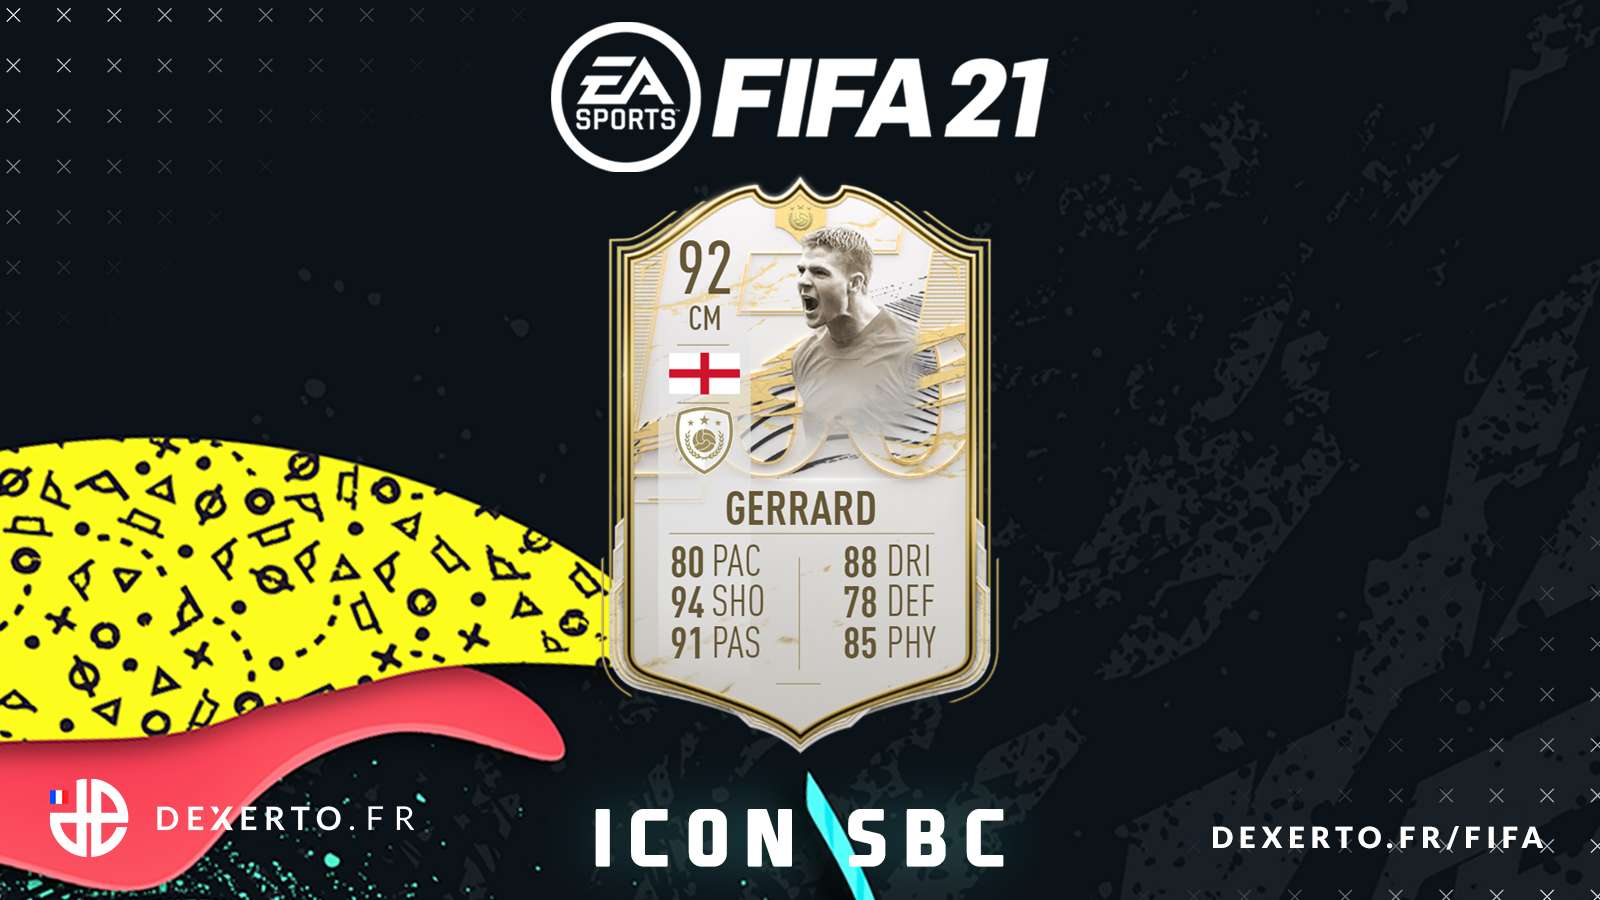 Steven Gerrard FIFA 21 Prime Icon SBC